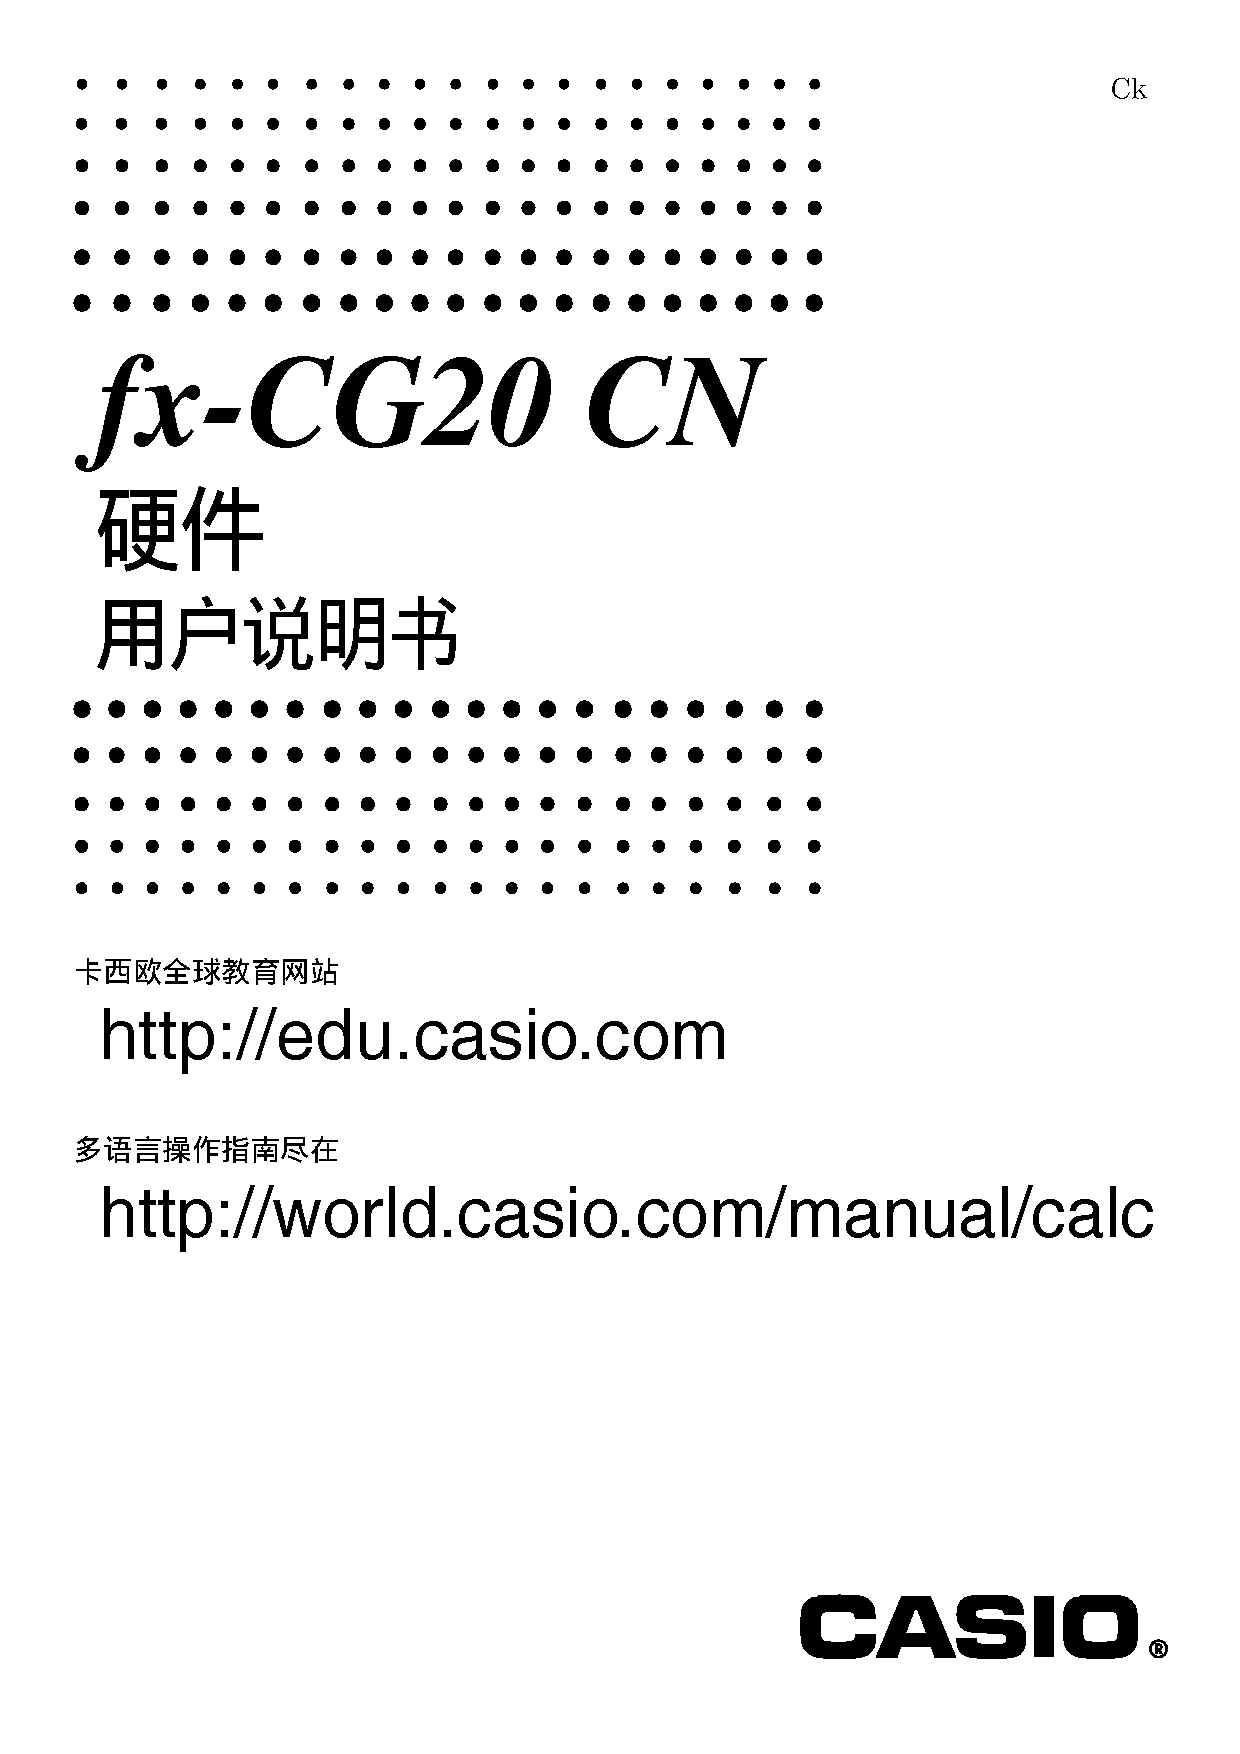 卡西欧 Casio FX-CG20 CN 使用说明书 封面